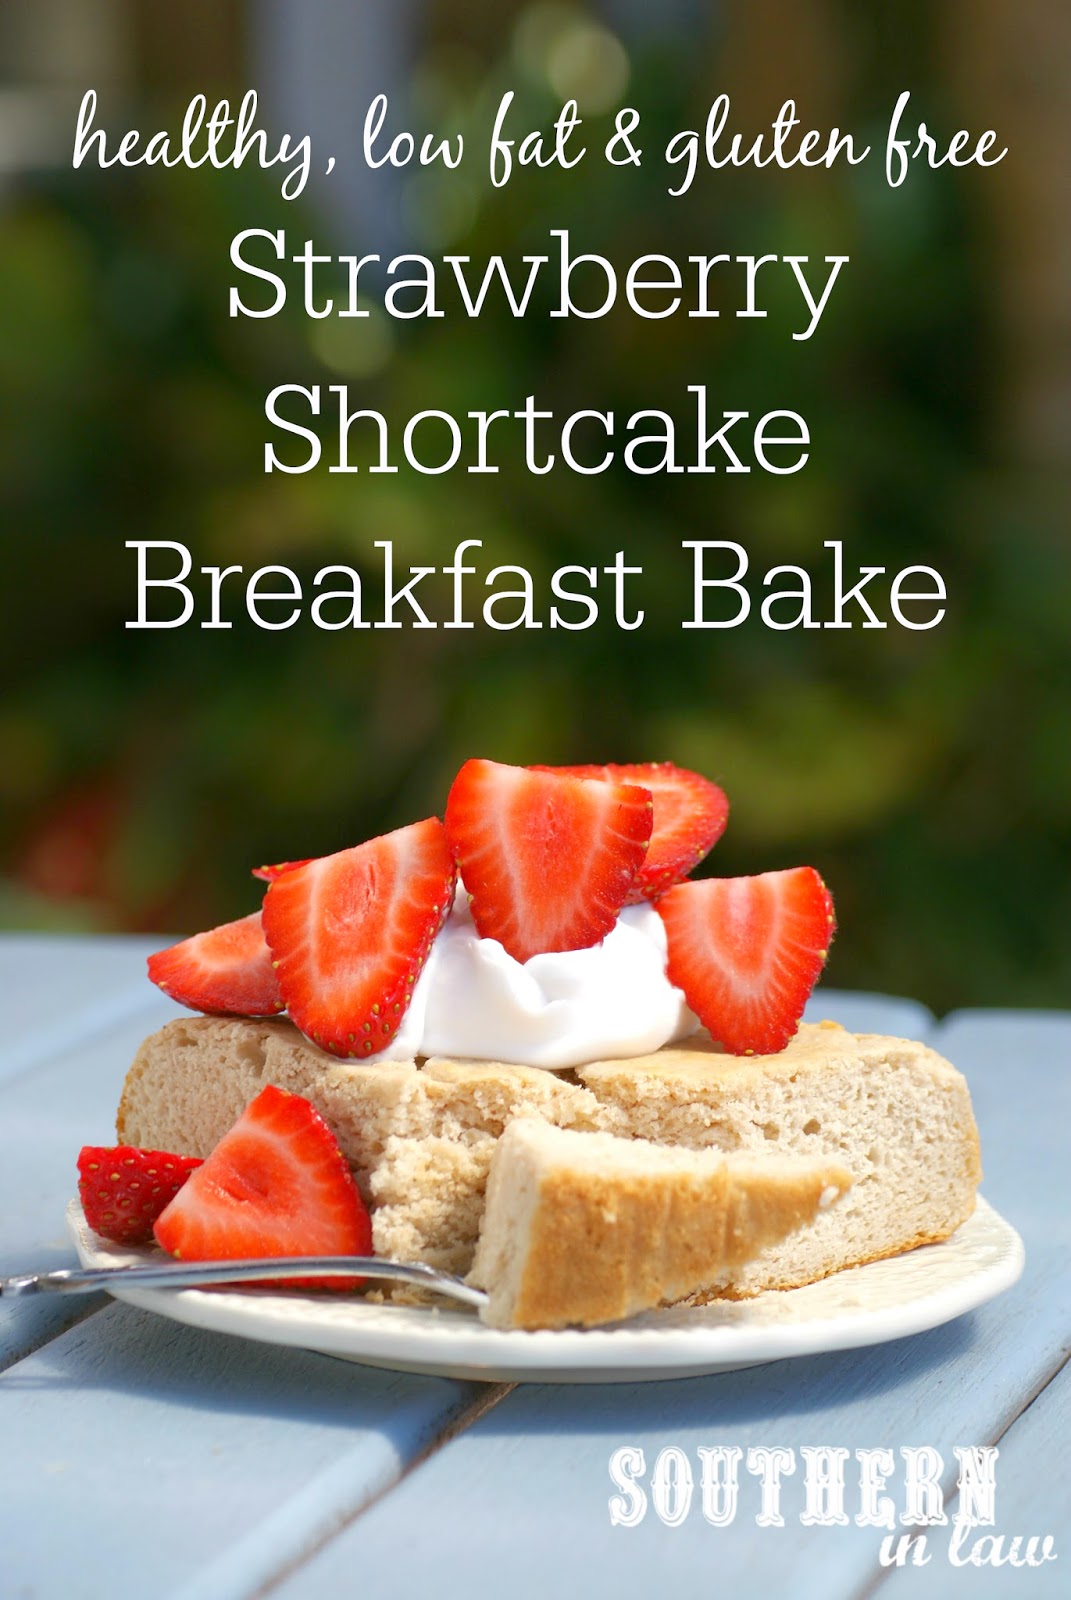 Strawberry Shortcake Breakfast Bake